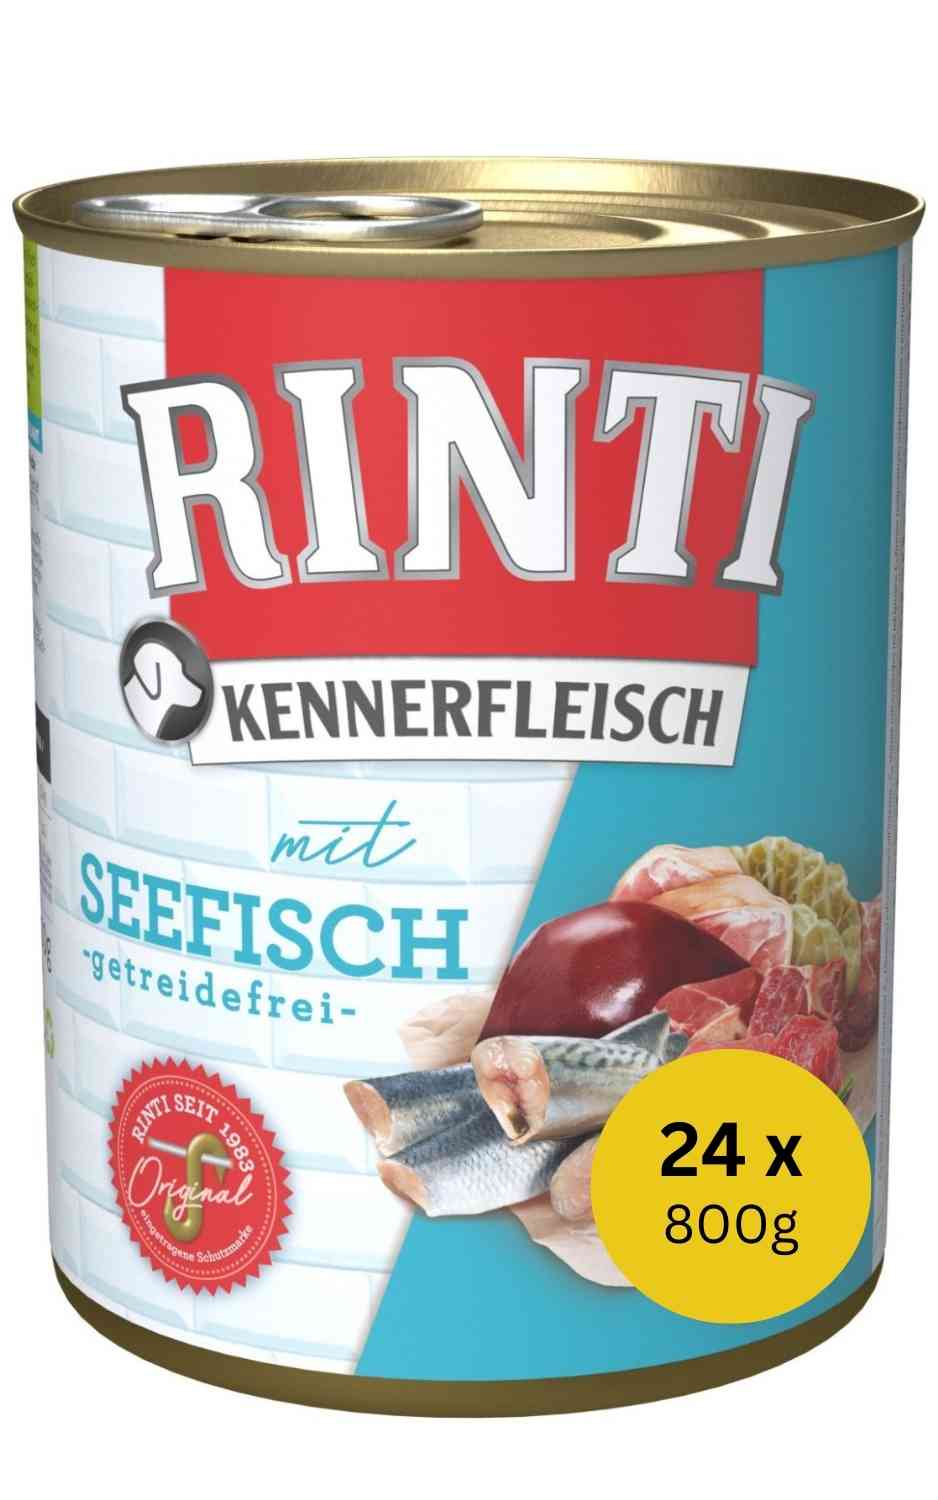 Rinti Kennerfleisch Seefisch 24 x 800 g Dose